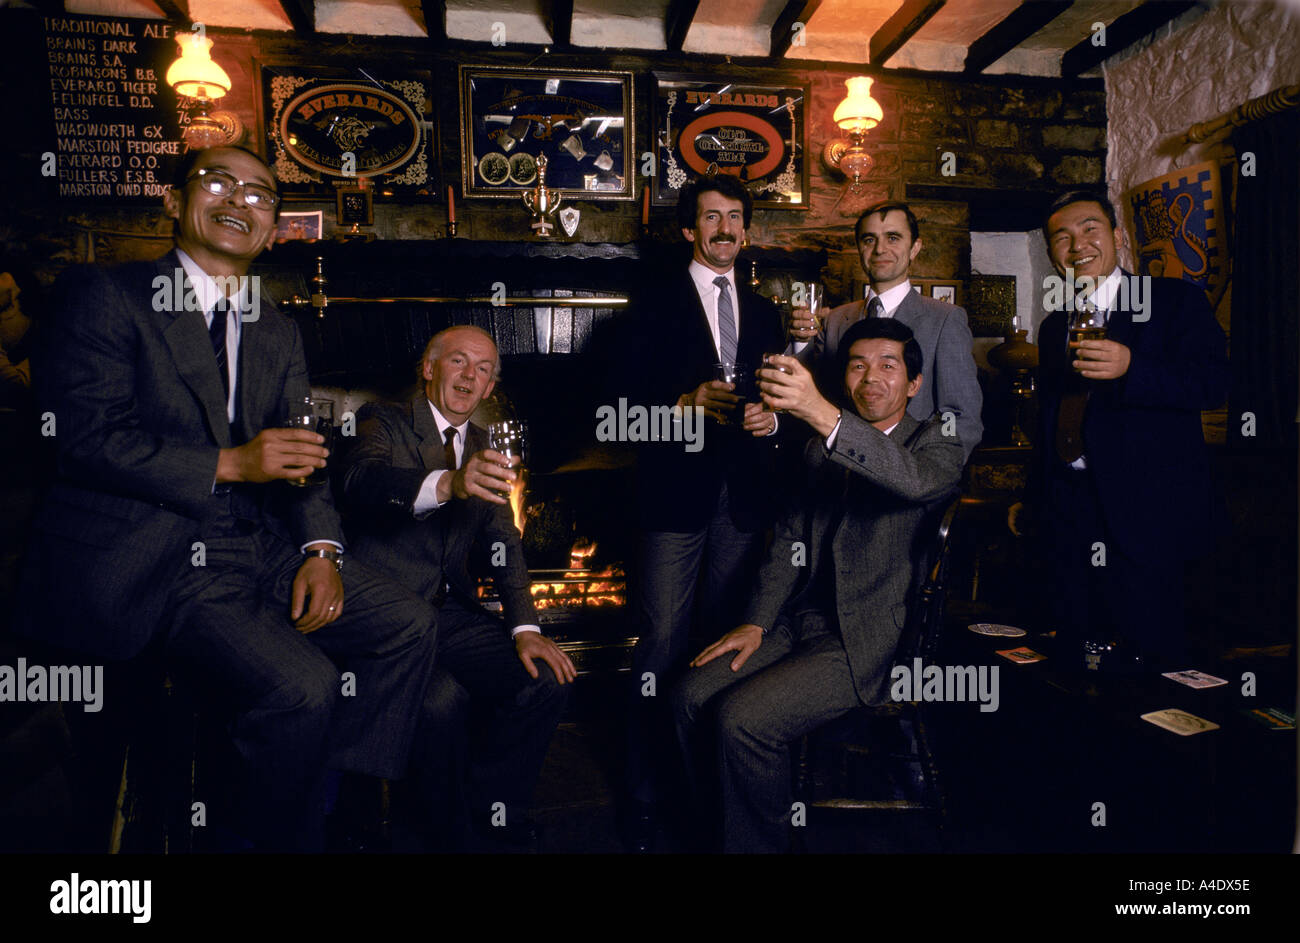 British men pub Banque de photographies et d'images à haute résolution -  Alamy